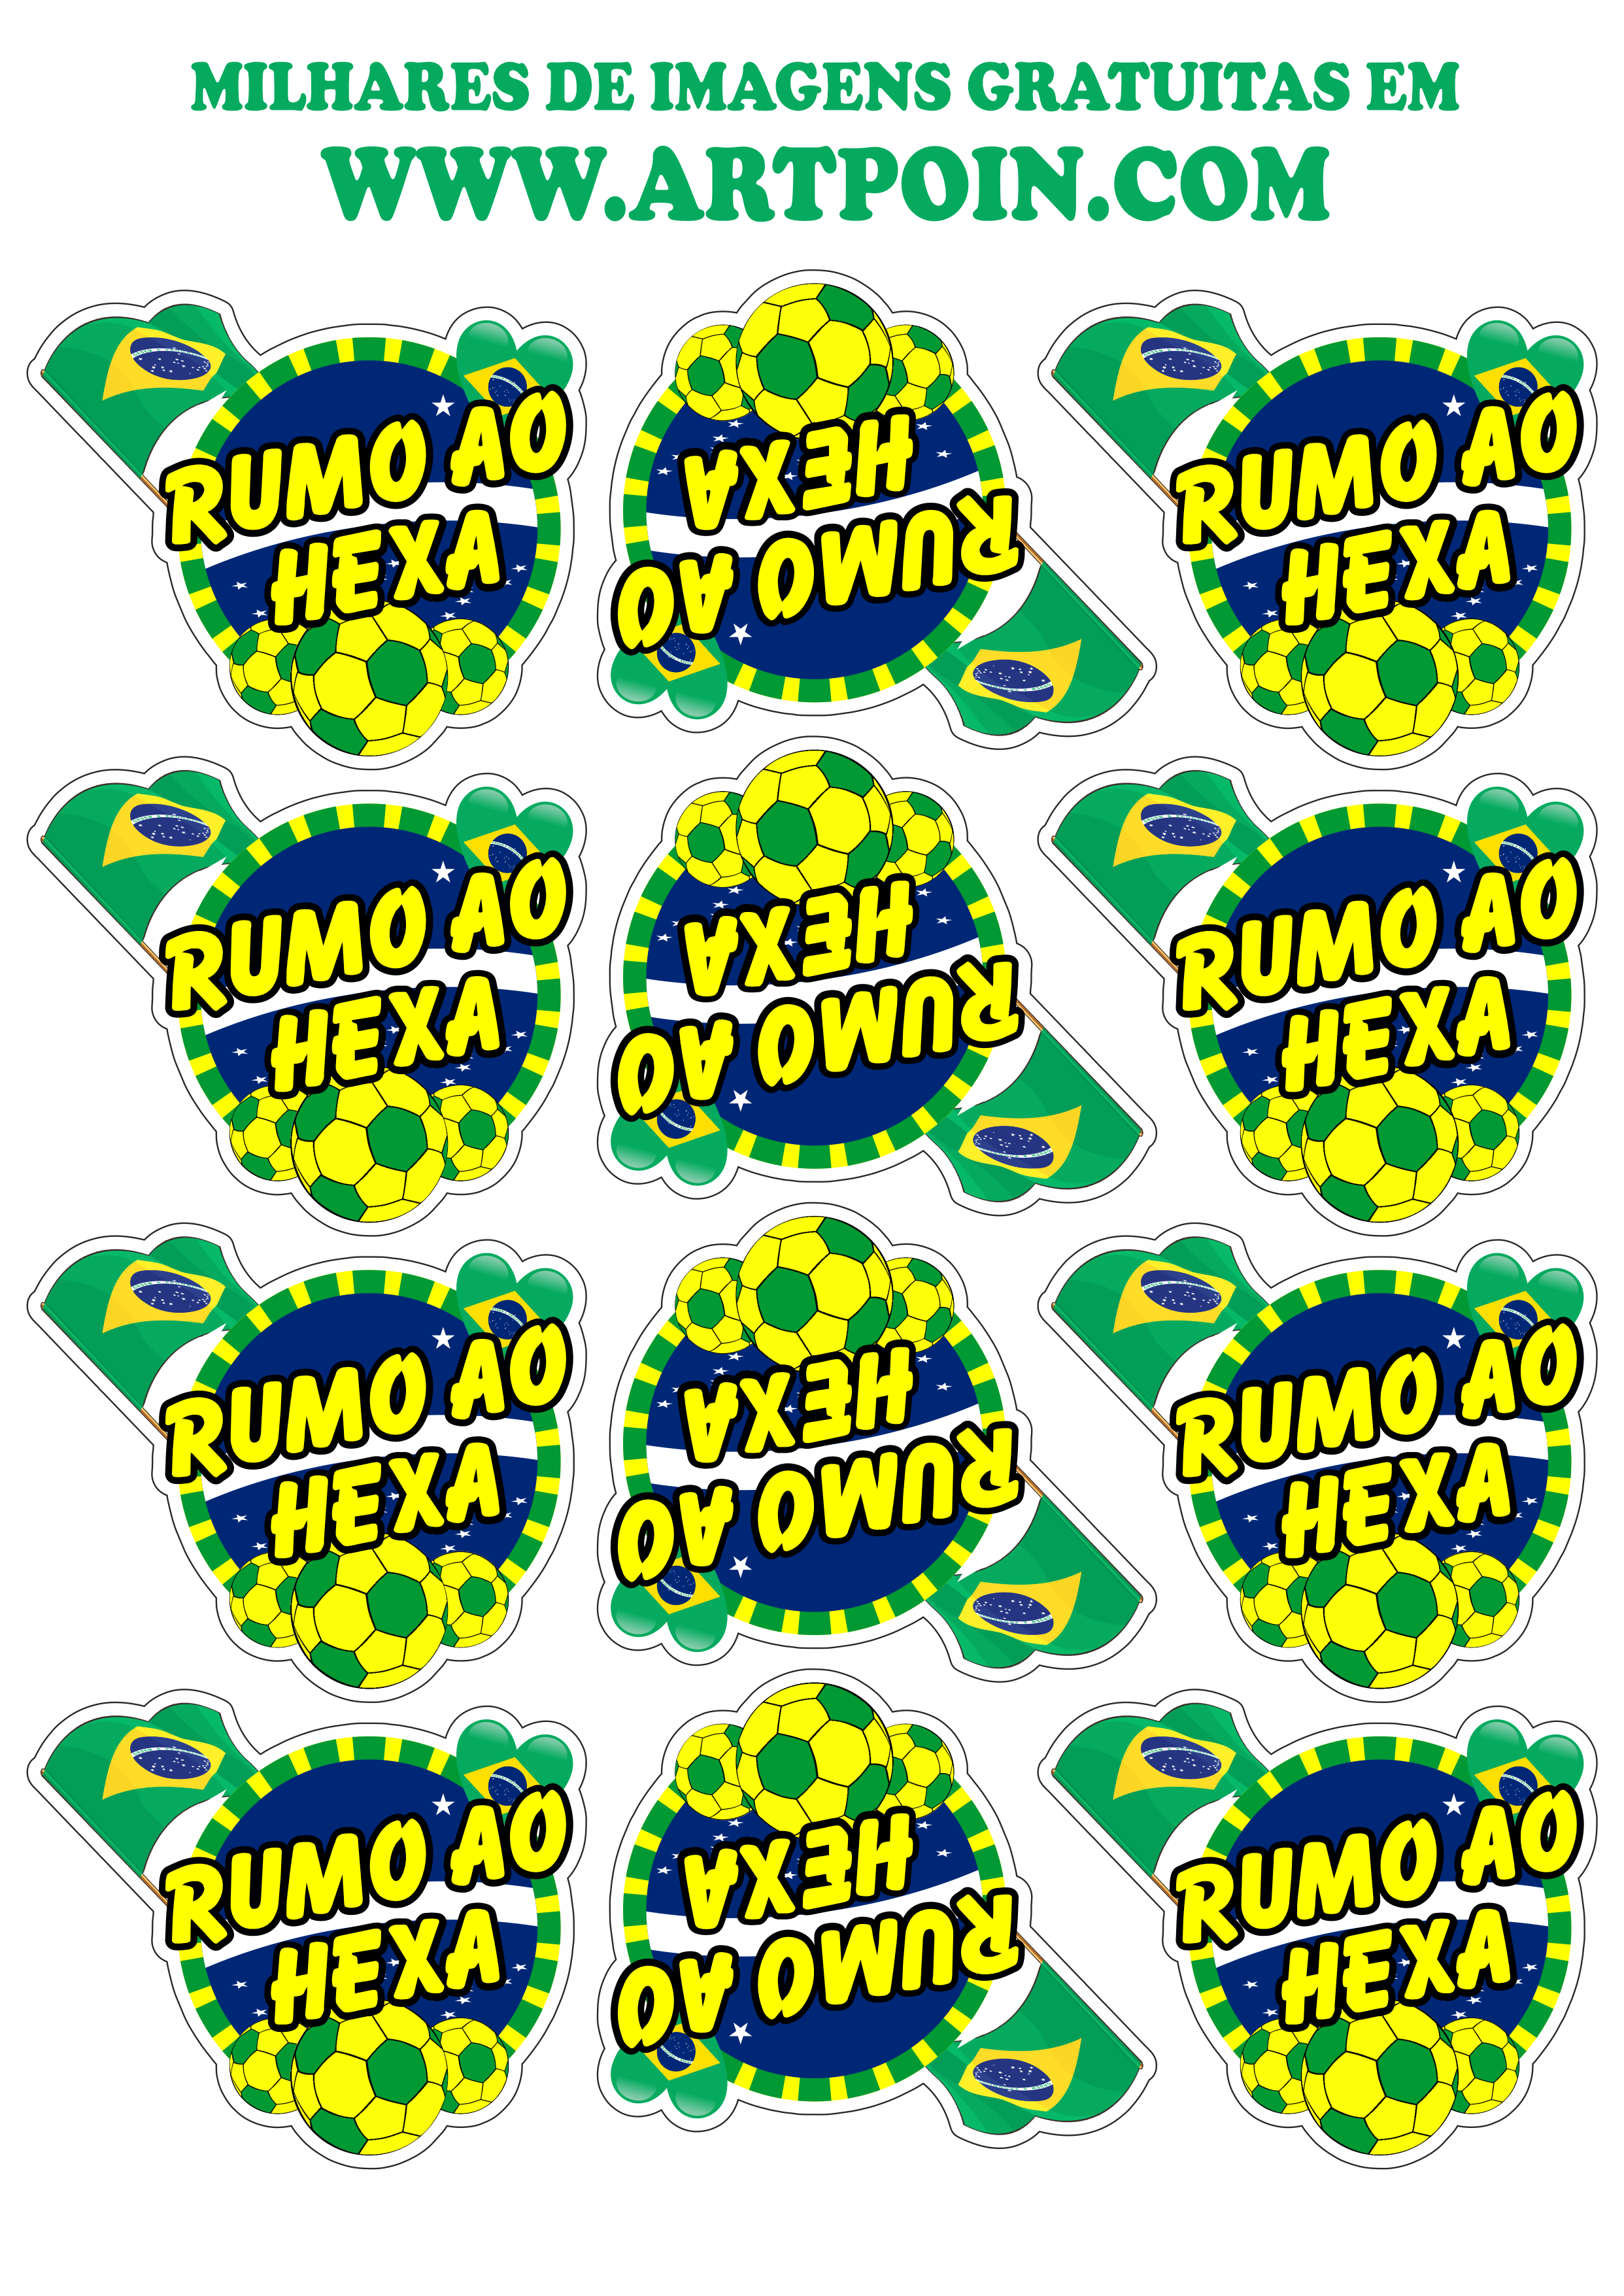 stickers-copa-do-mundo1